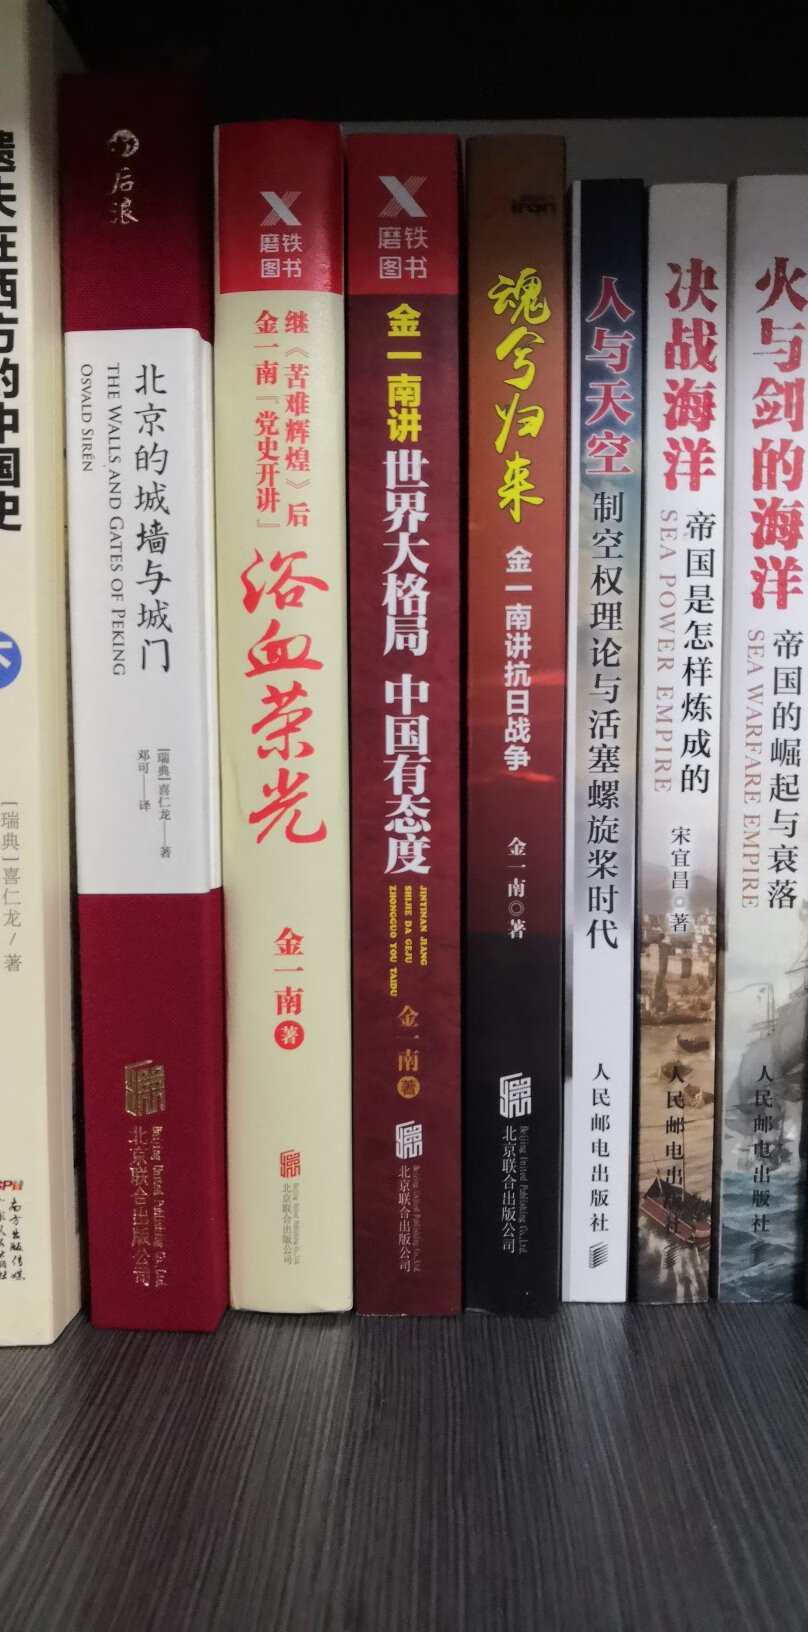 金一南教授的讲座是每每必看的，他讲党史军史是抓住了魂，就是中国***人的历史担当。其实书中很多内容已很熟悉，买来一是为收藏，二是为经常激励自己。